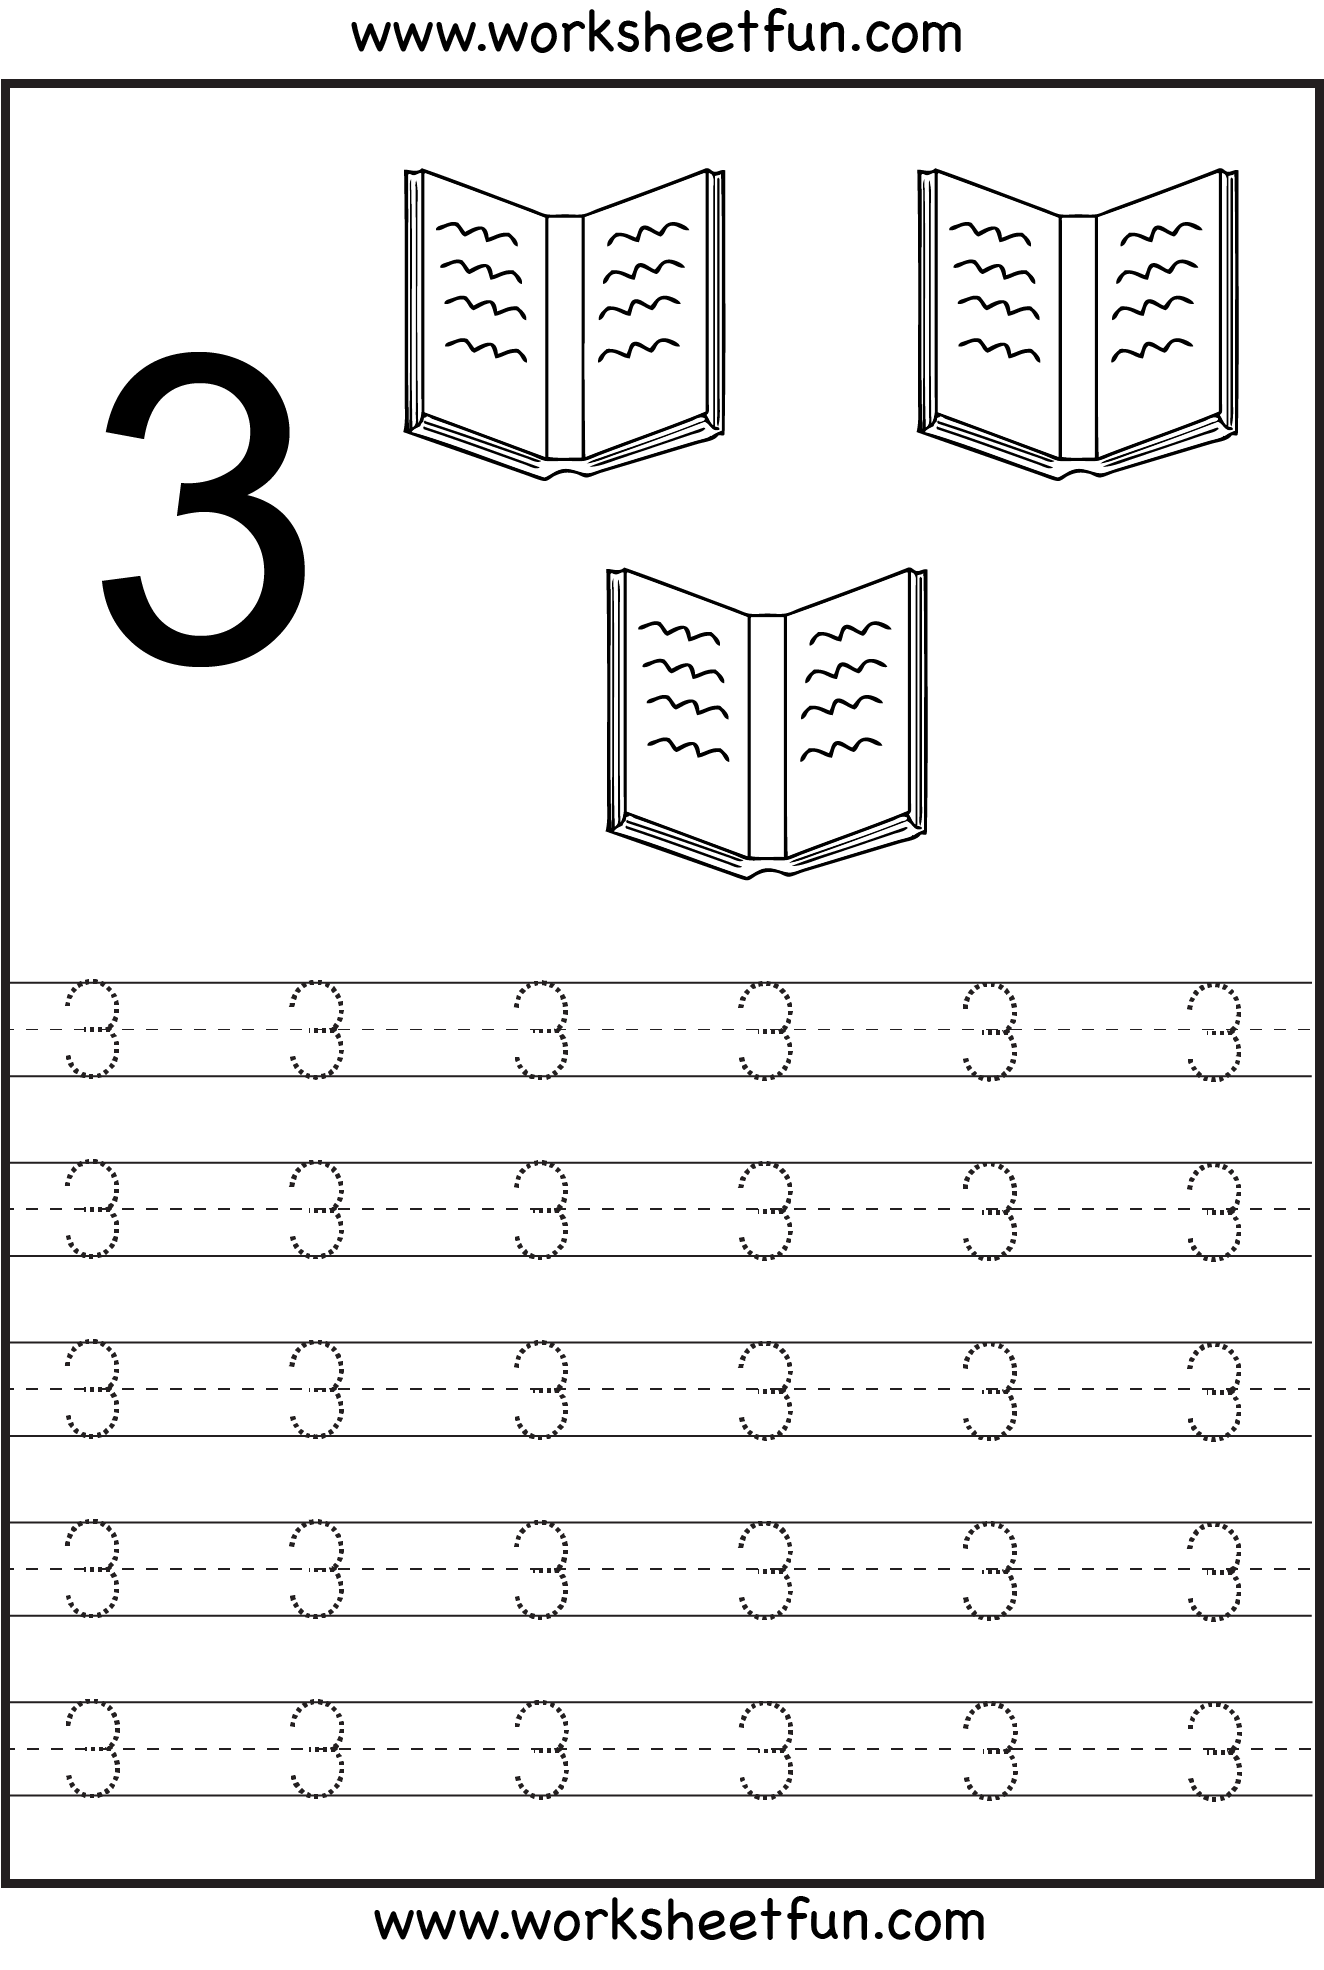 number-tracing-worksheets-for-kindergarten-1-10-ten-worksheets-free-printable-worksheets